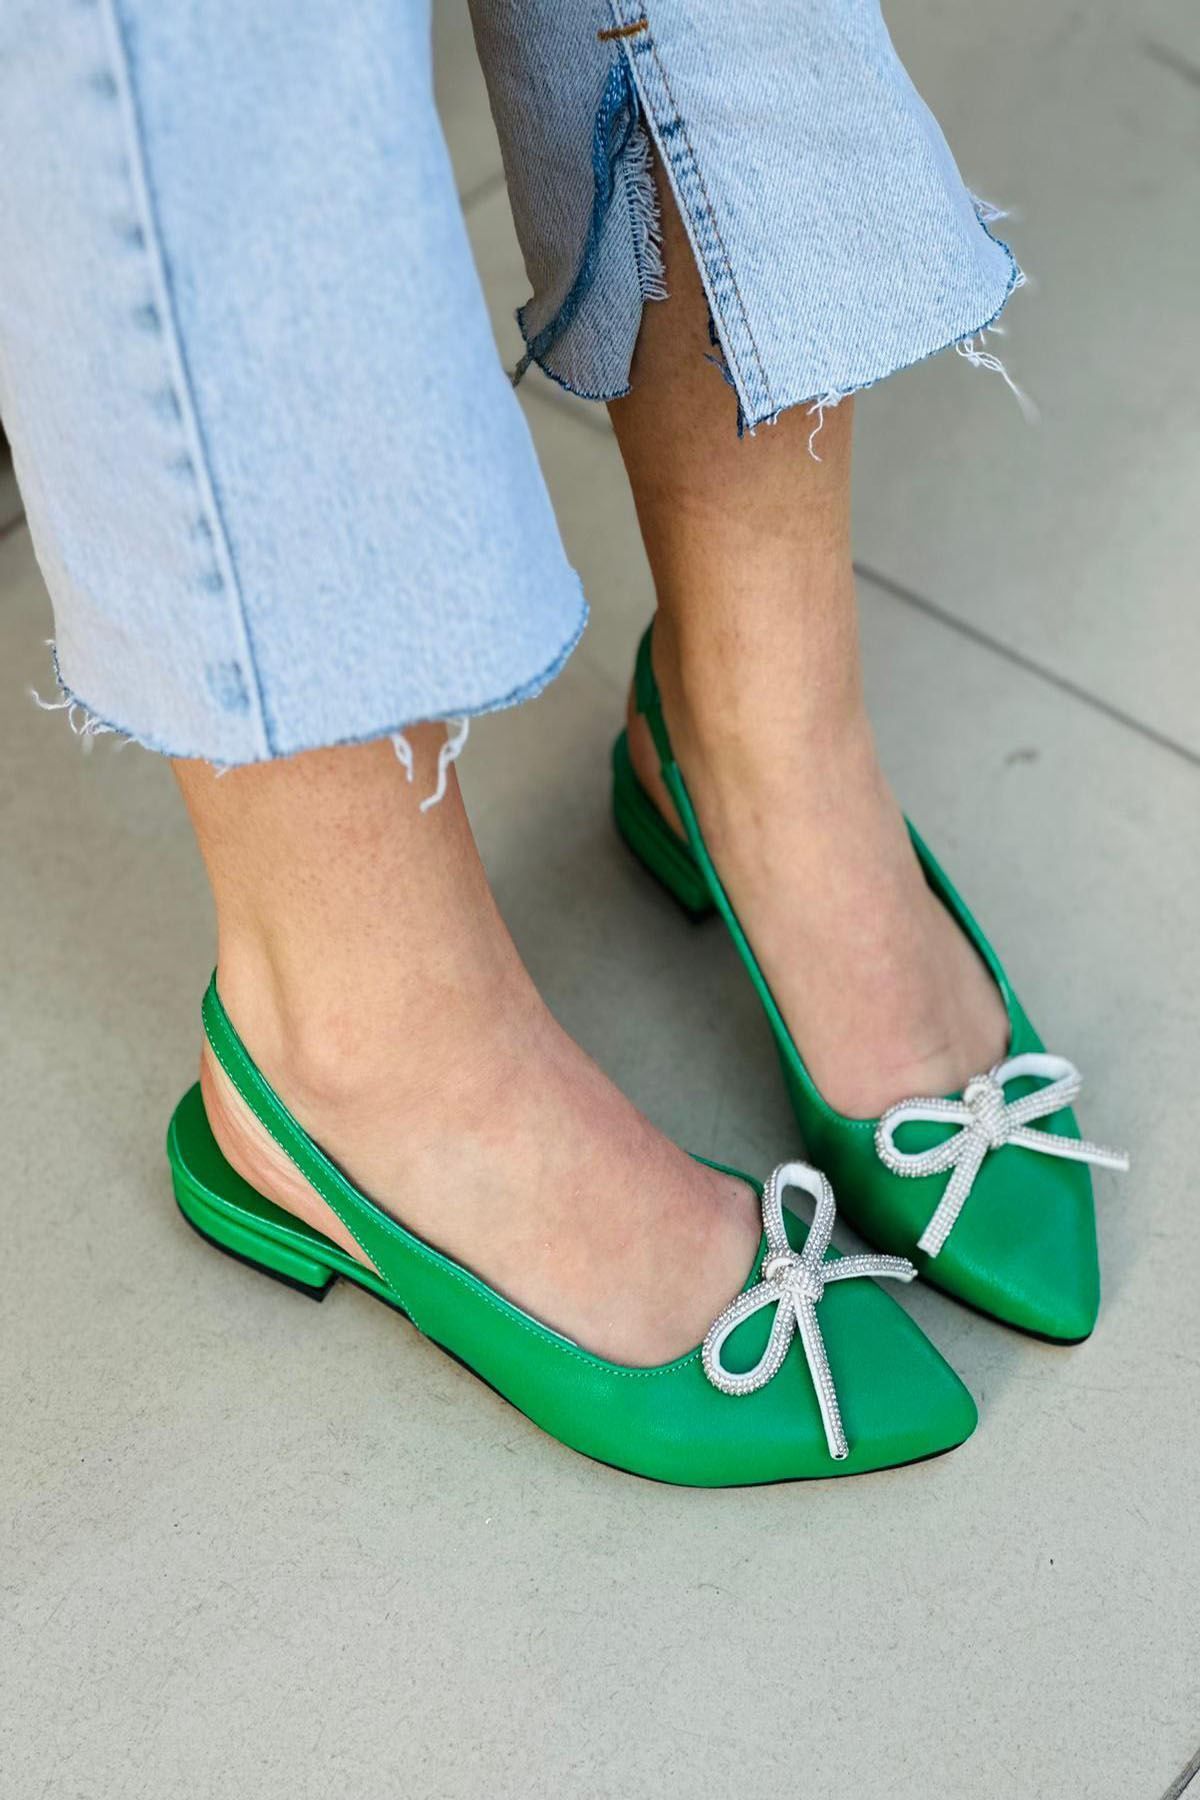 Mida Shoes Ylisa Yeşil Deri Topuklu Kadın Babet